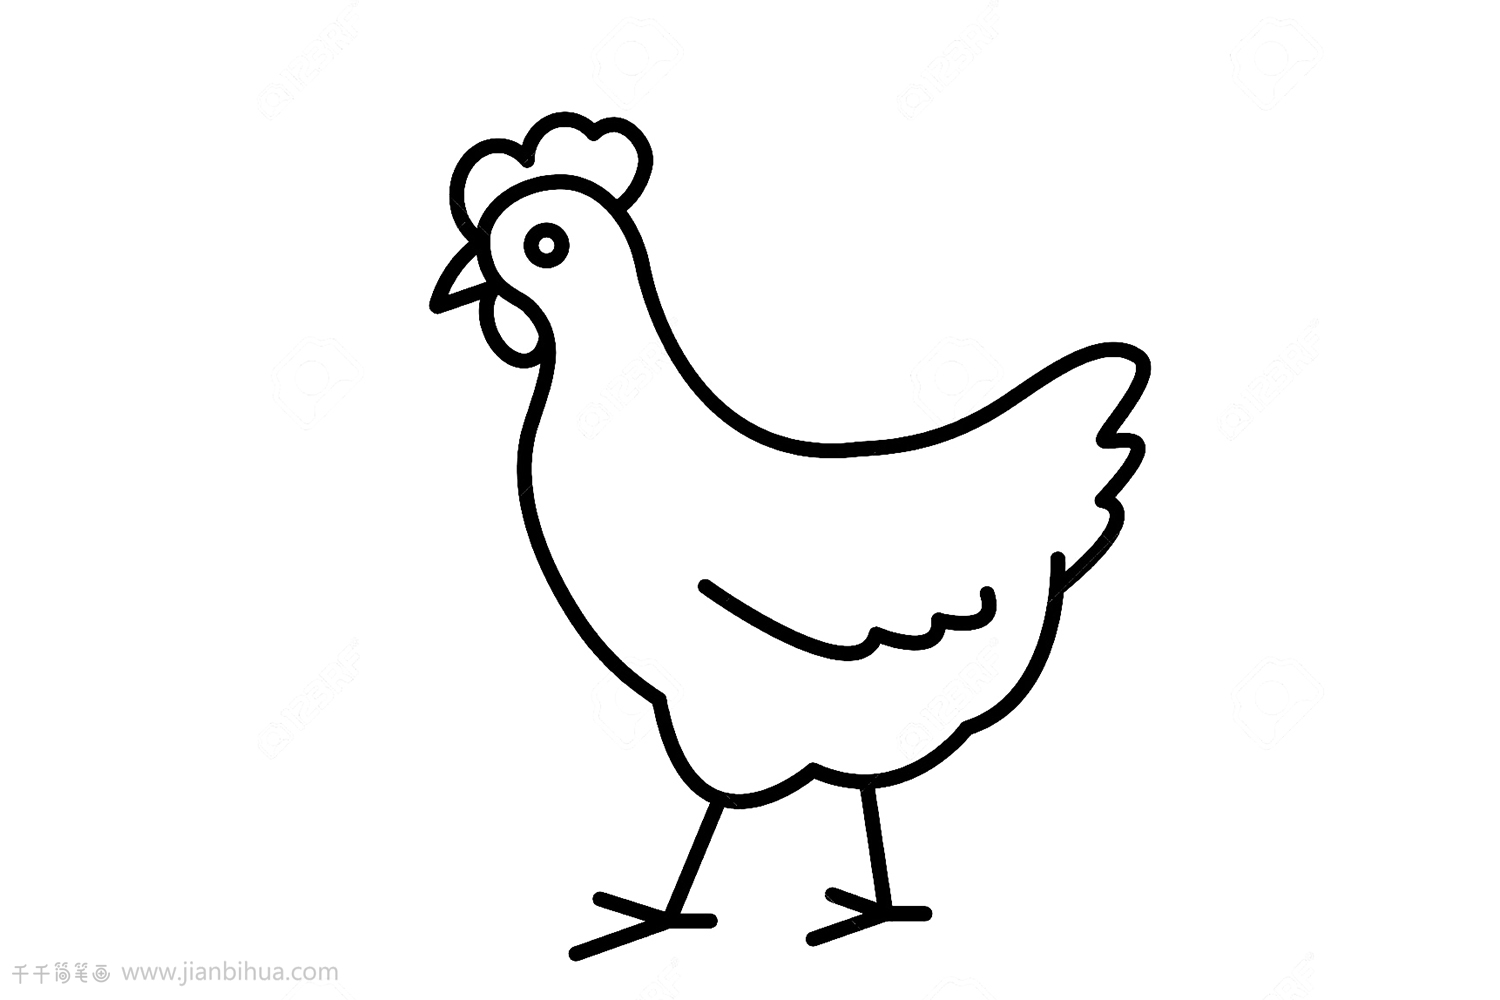 简笔鸡的画法图片